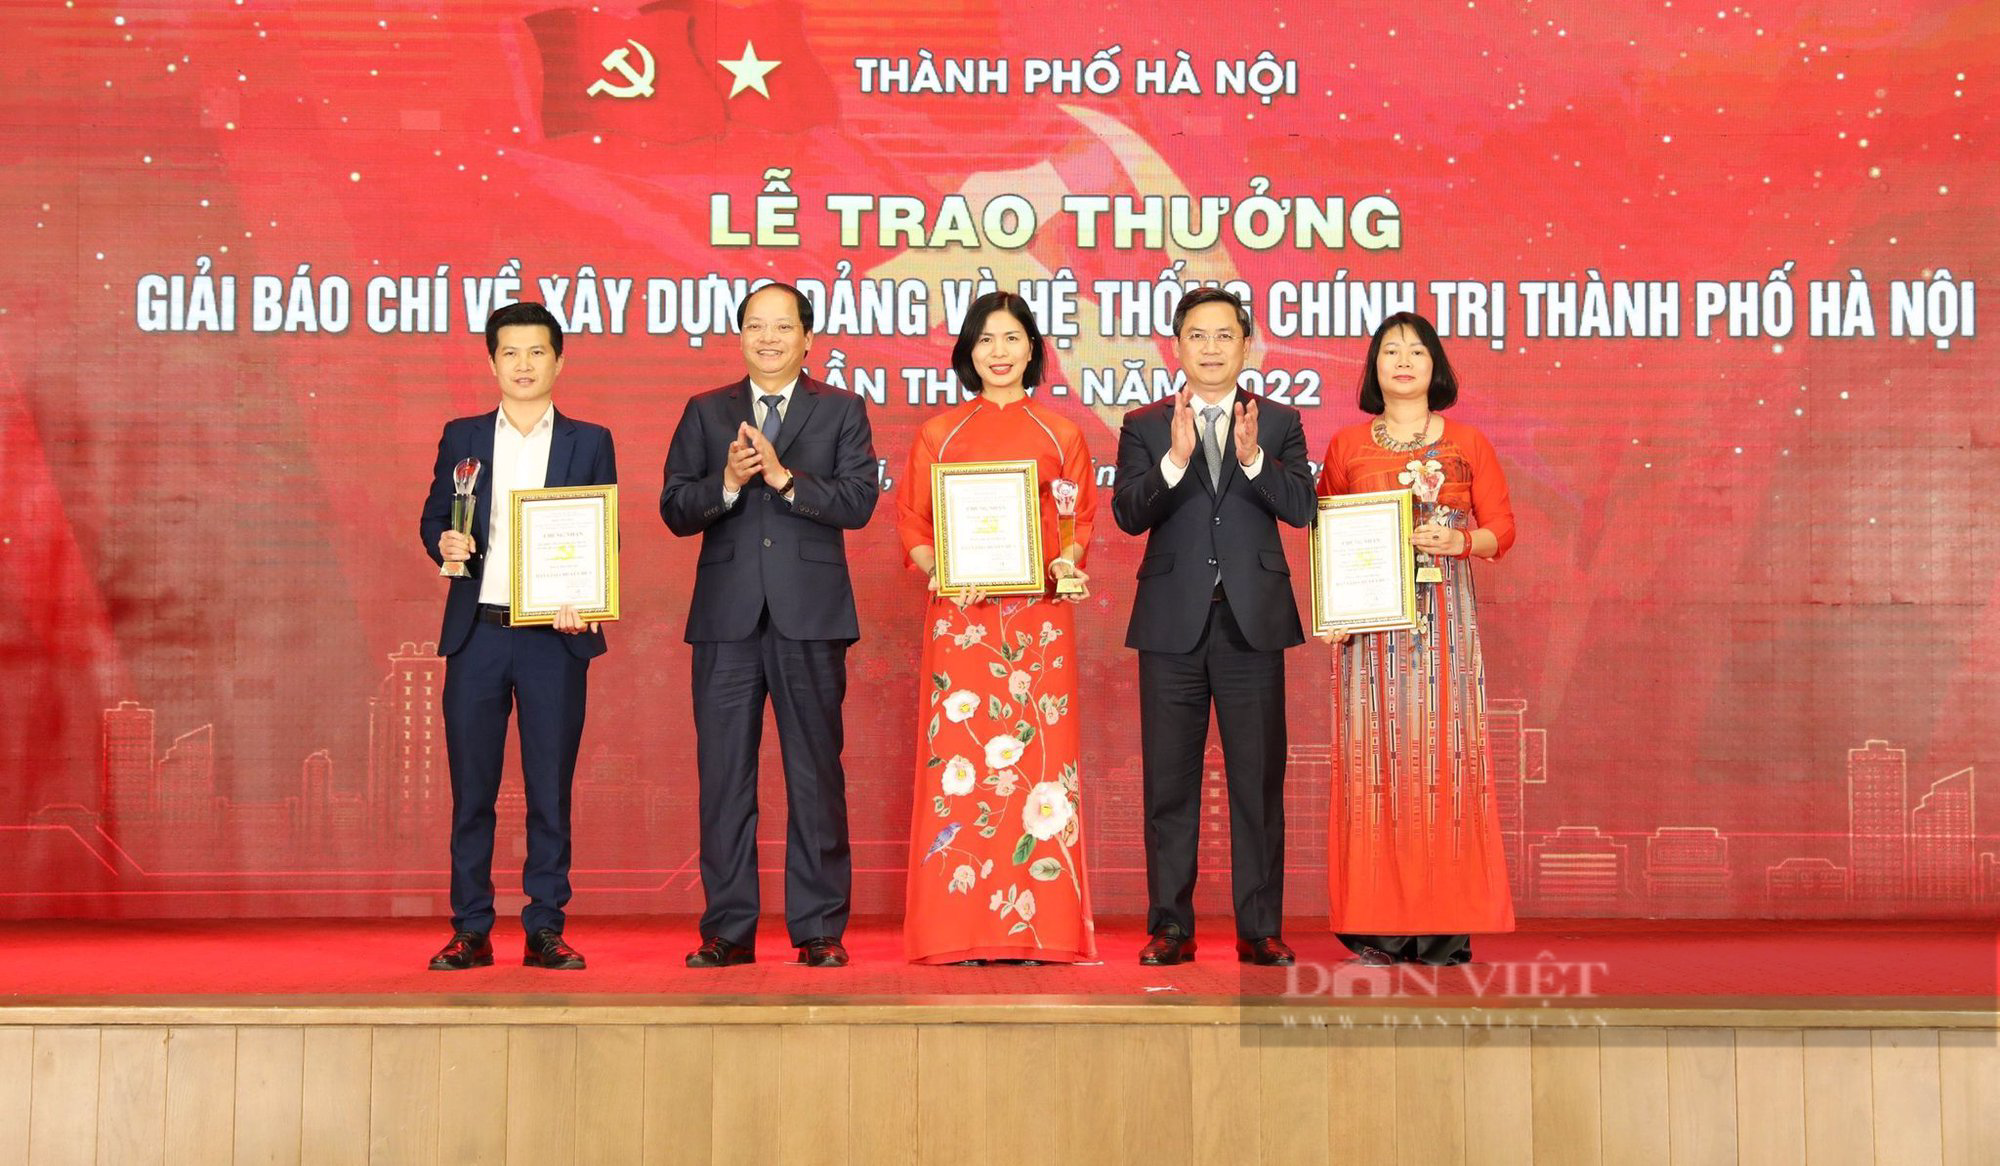 Hà Nội: Triển khai Giải Báo chí về xây dựng Đảng và hệ thống chính trị - Ảnh 1.